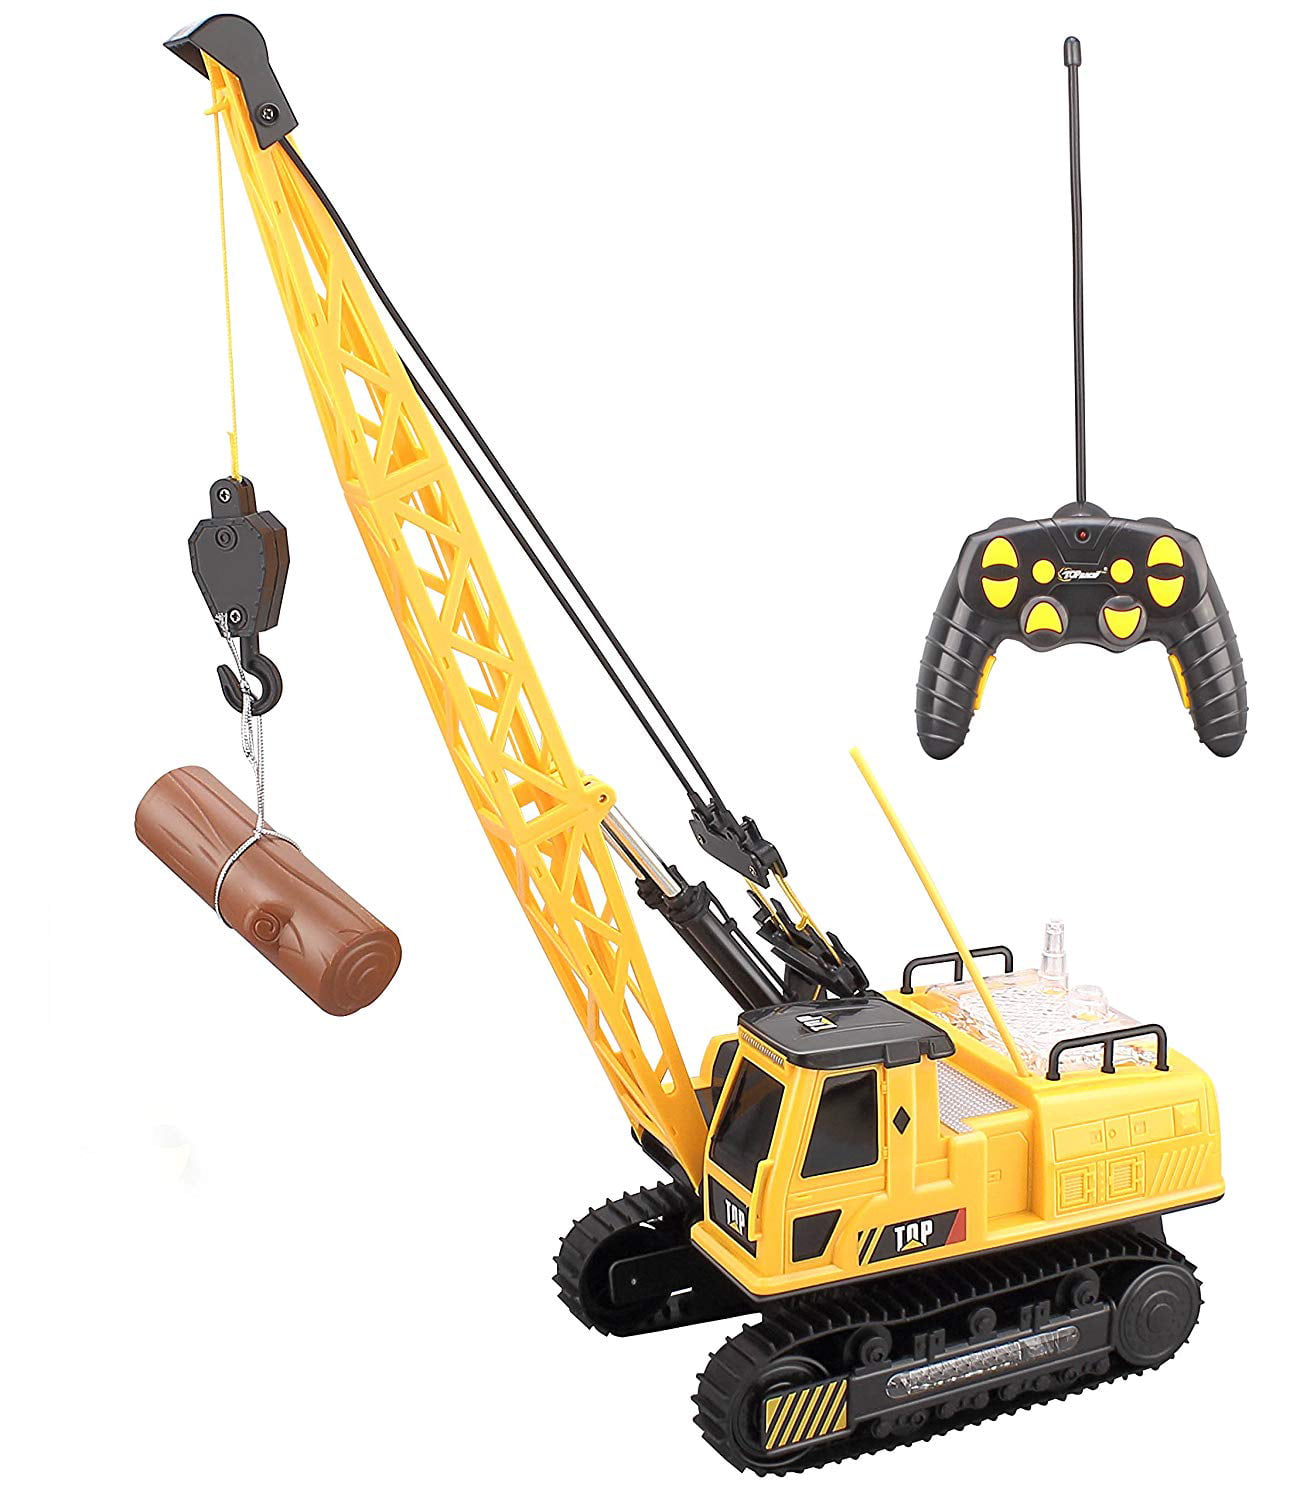 rc crane toy